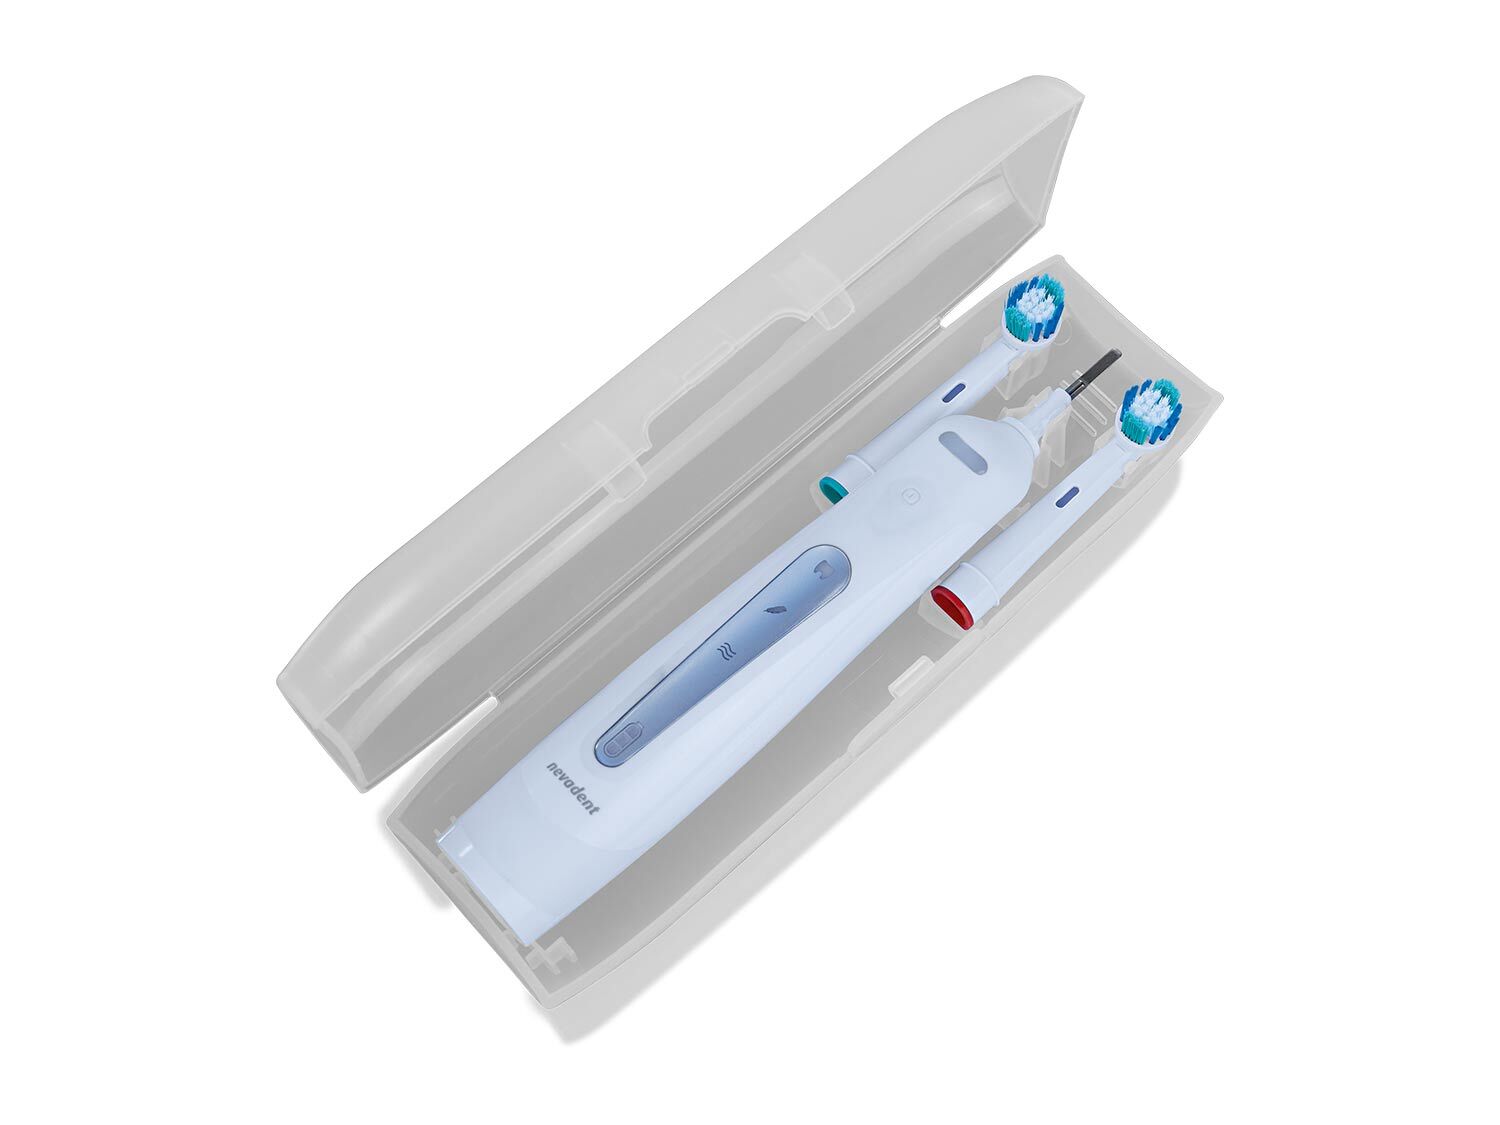 Cepillo dental eléctrico  recargable Advanced